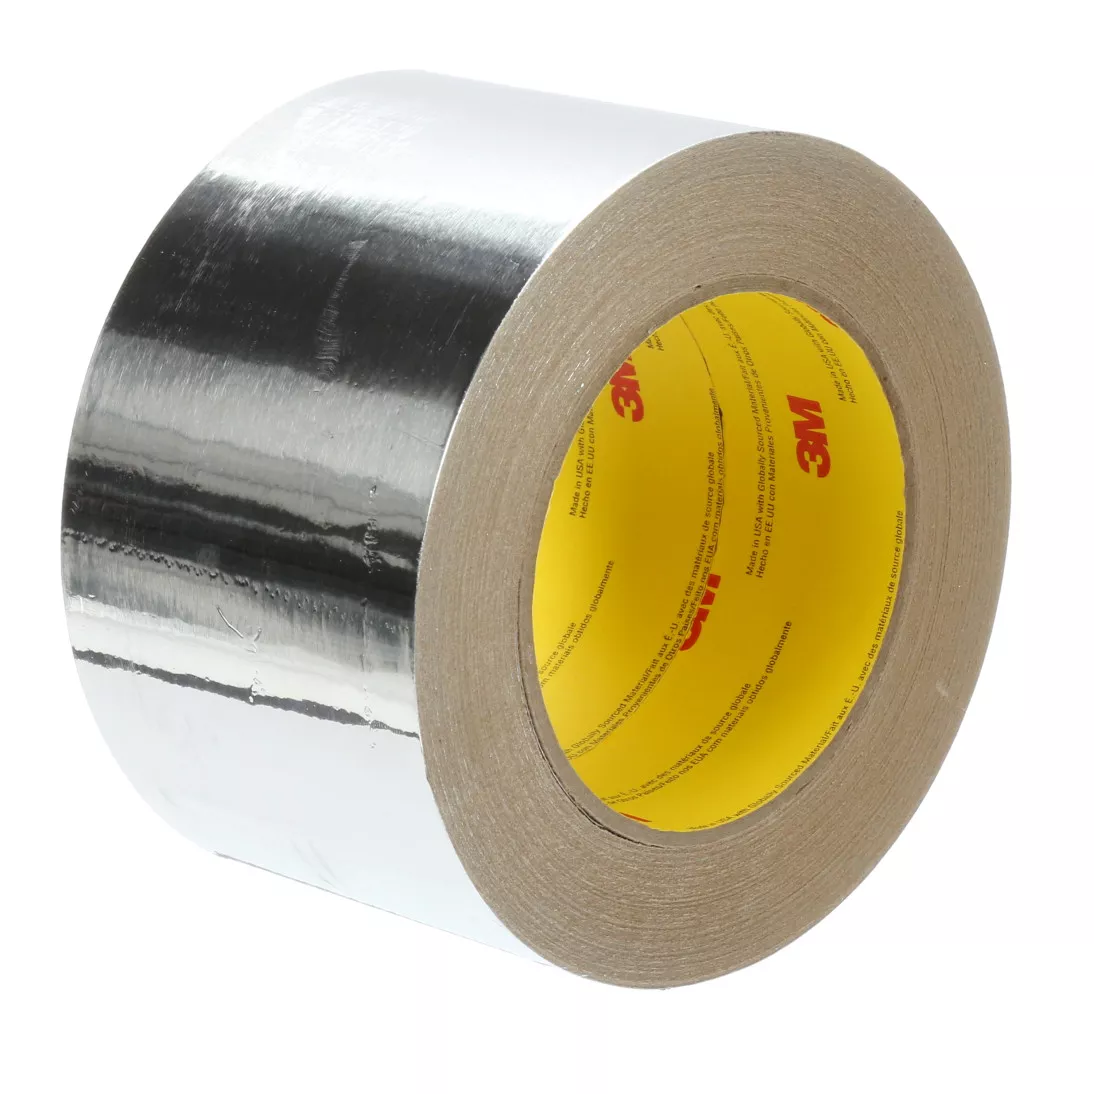 3M™ Venture Tape™ Aluminum Foil Tape 1521CW, Silver, 72 mm x 45.7 m, 2.8
mil, 16 rolls per case